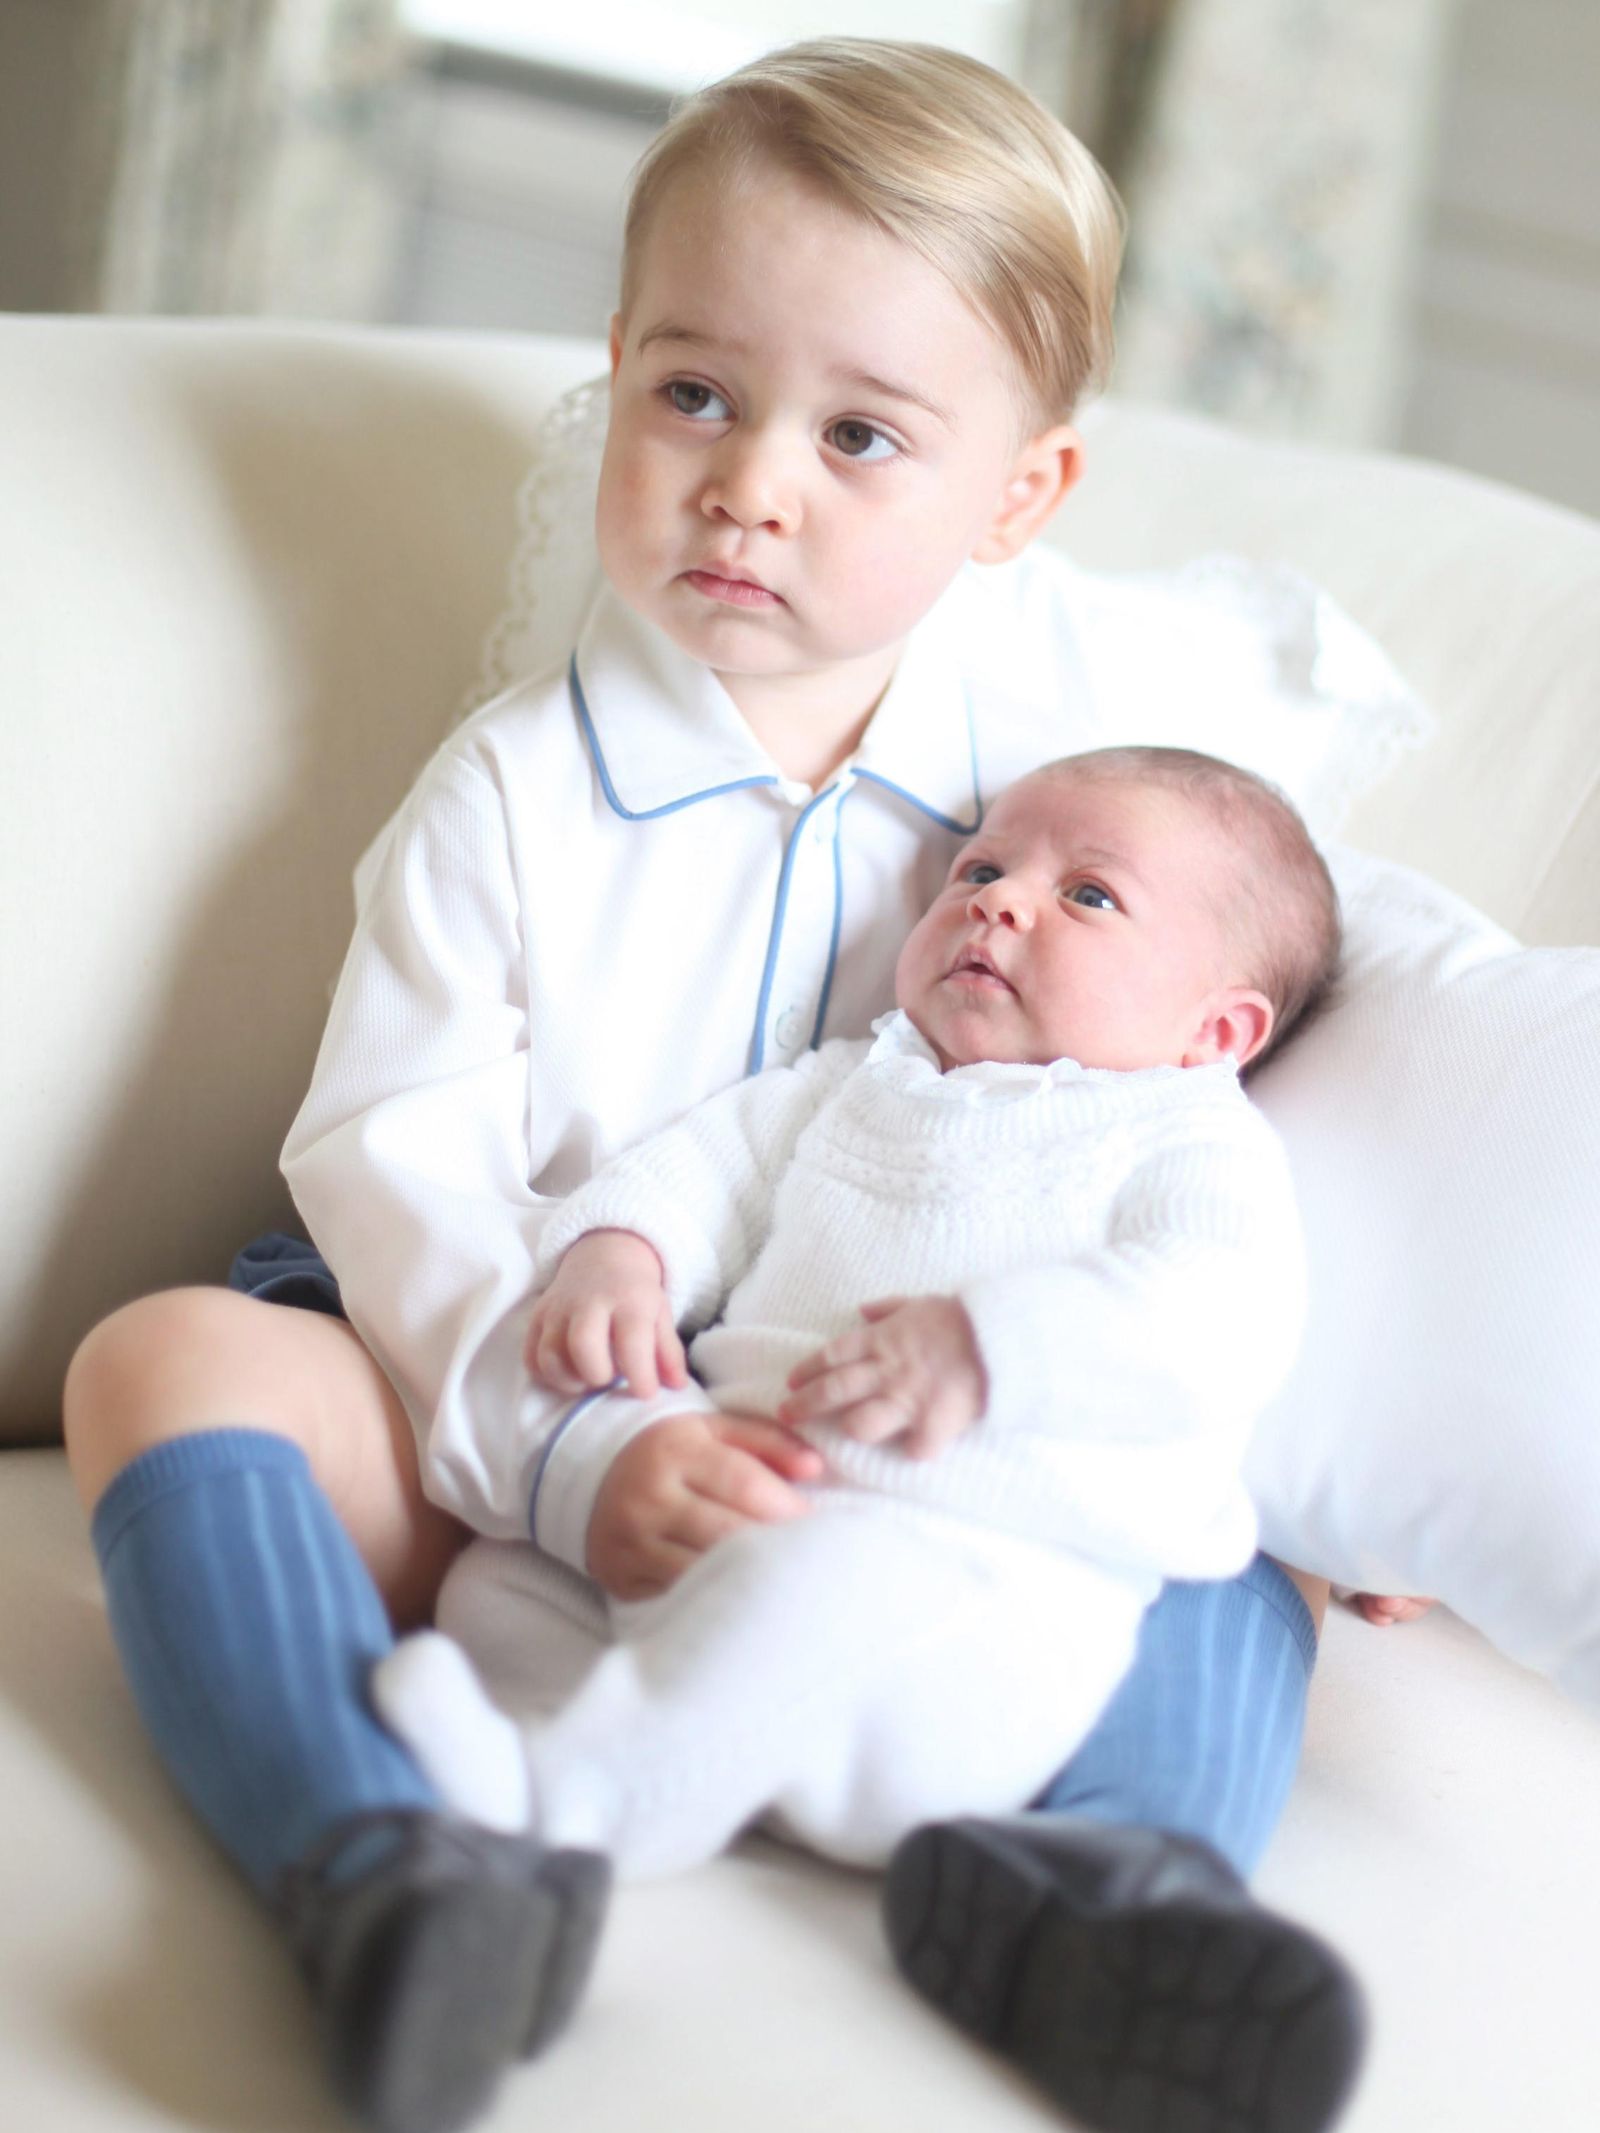 Fotografía de George y Charlotte tomada por Kate Middleton en 2015. (Palacio de Kensington)